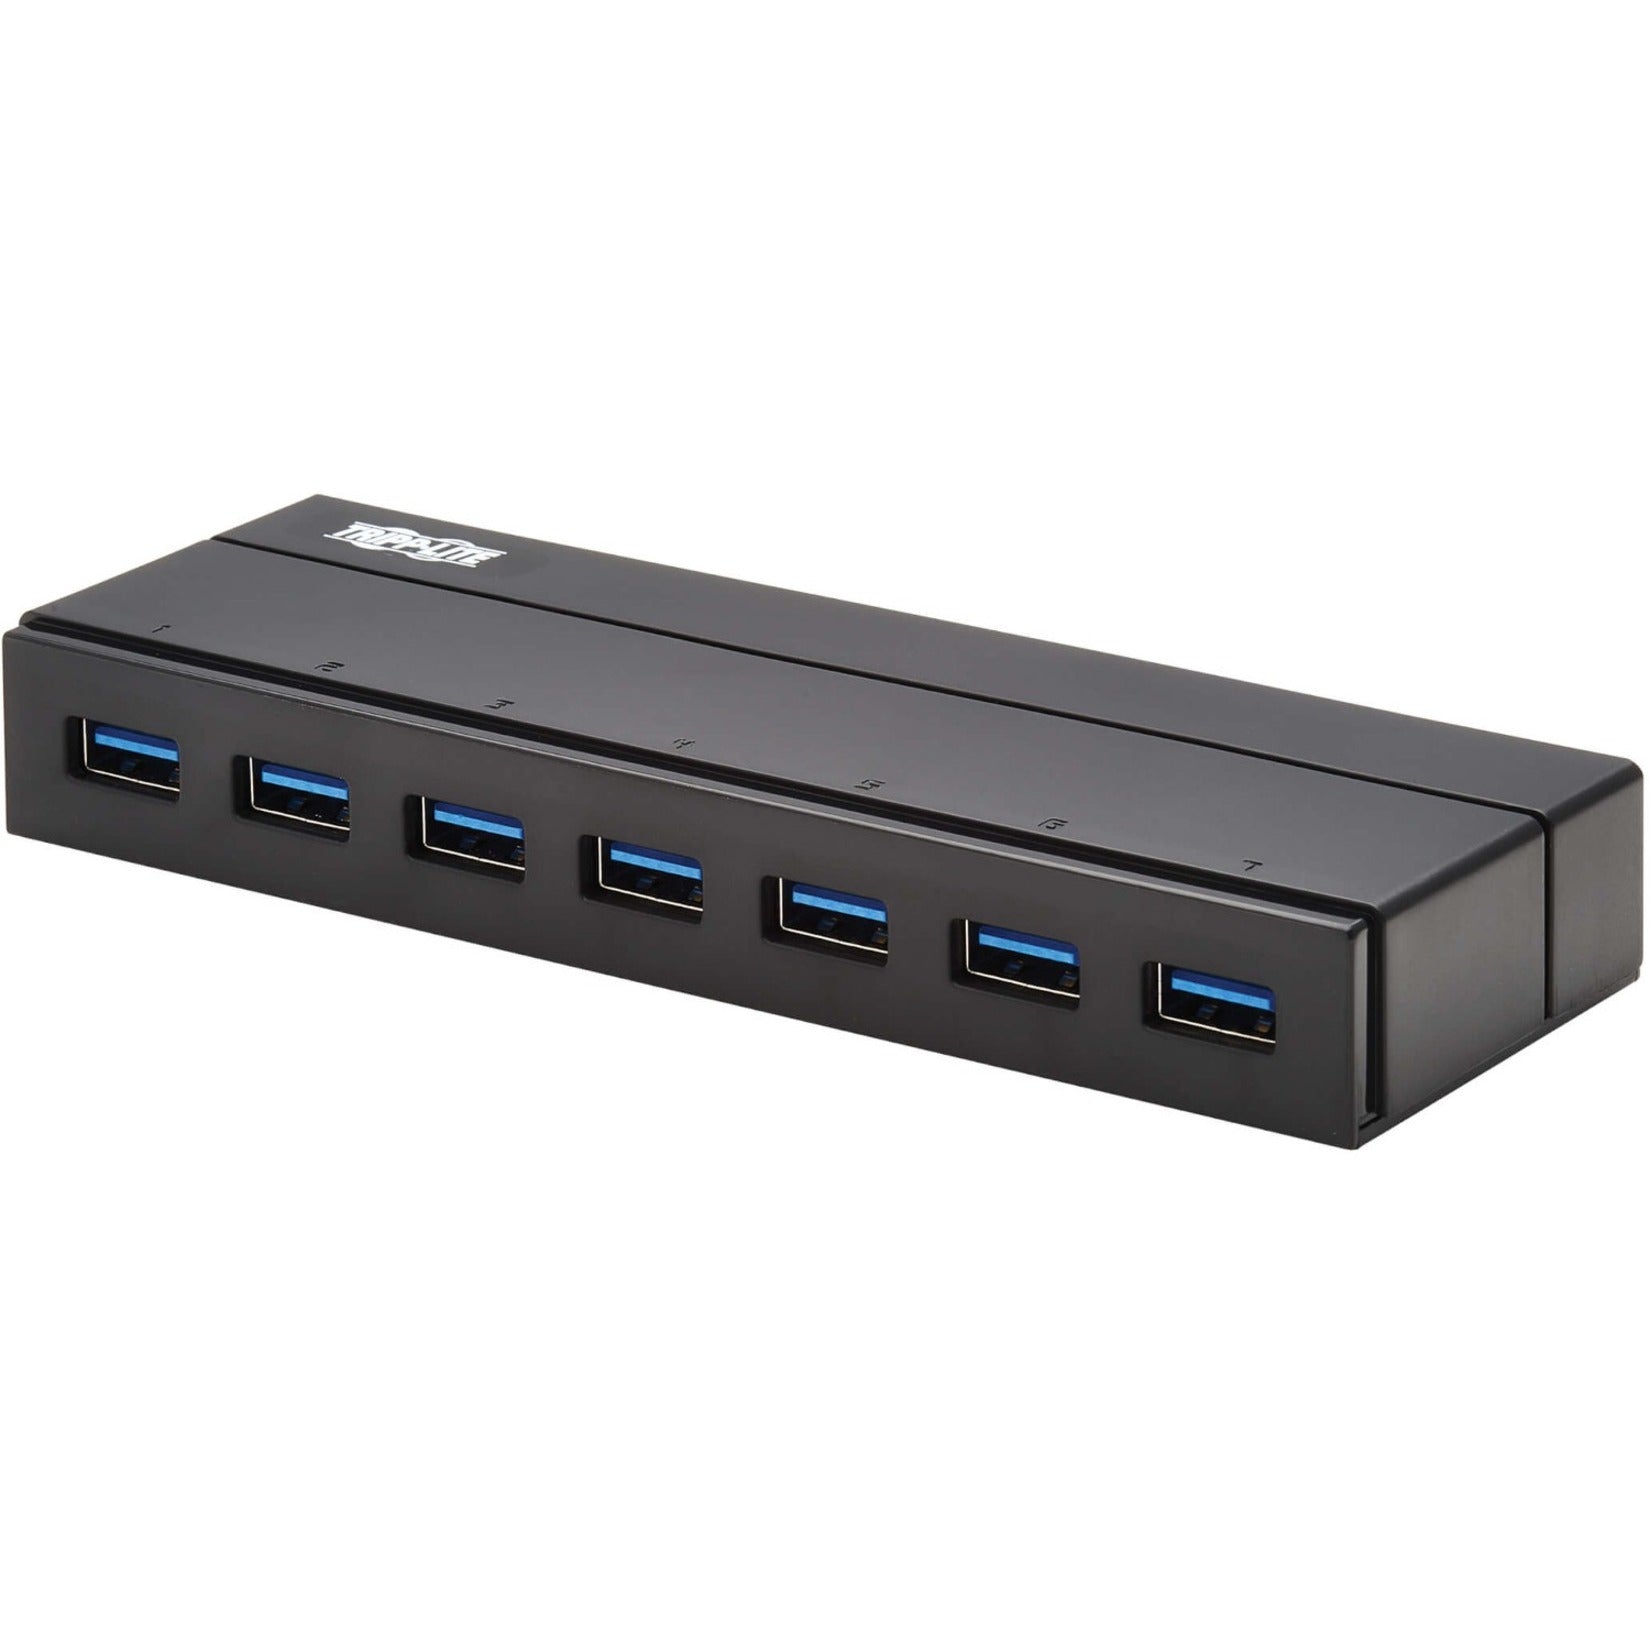 Tripp Lite U360-007-INT 7-Port USB-A Mini Hub - USB 3.2 Gen 1 International Plug Adapters Portable Black